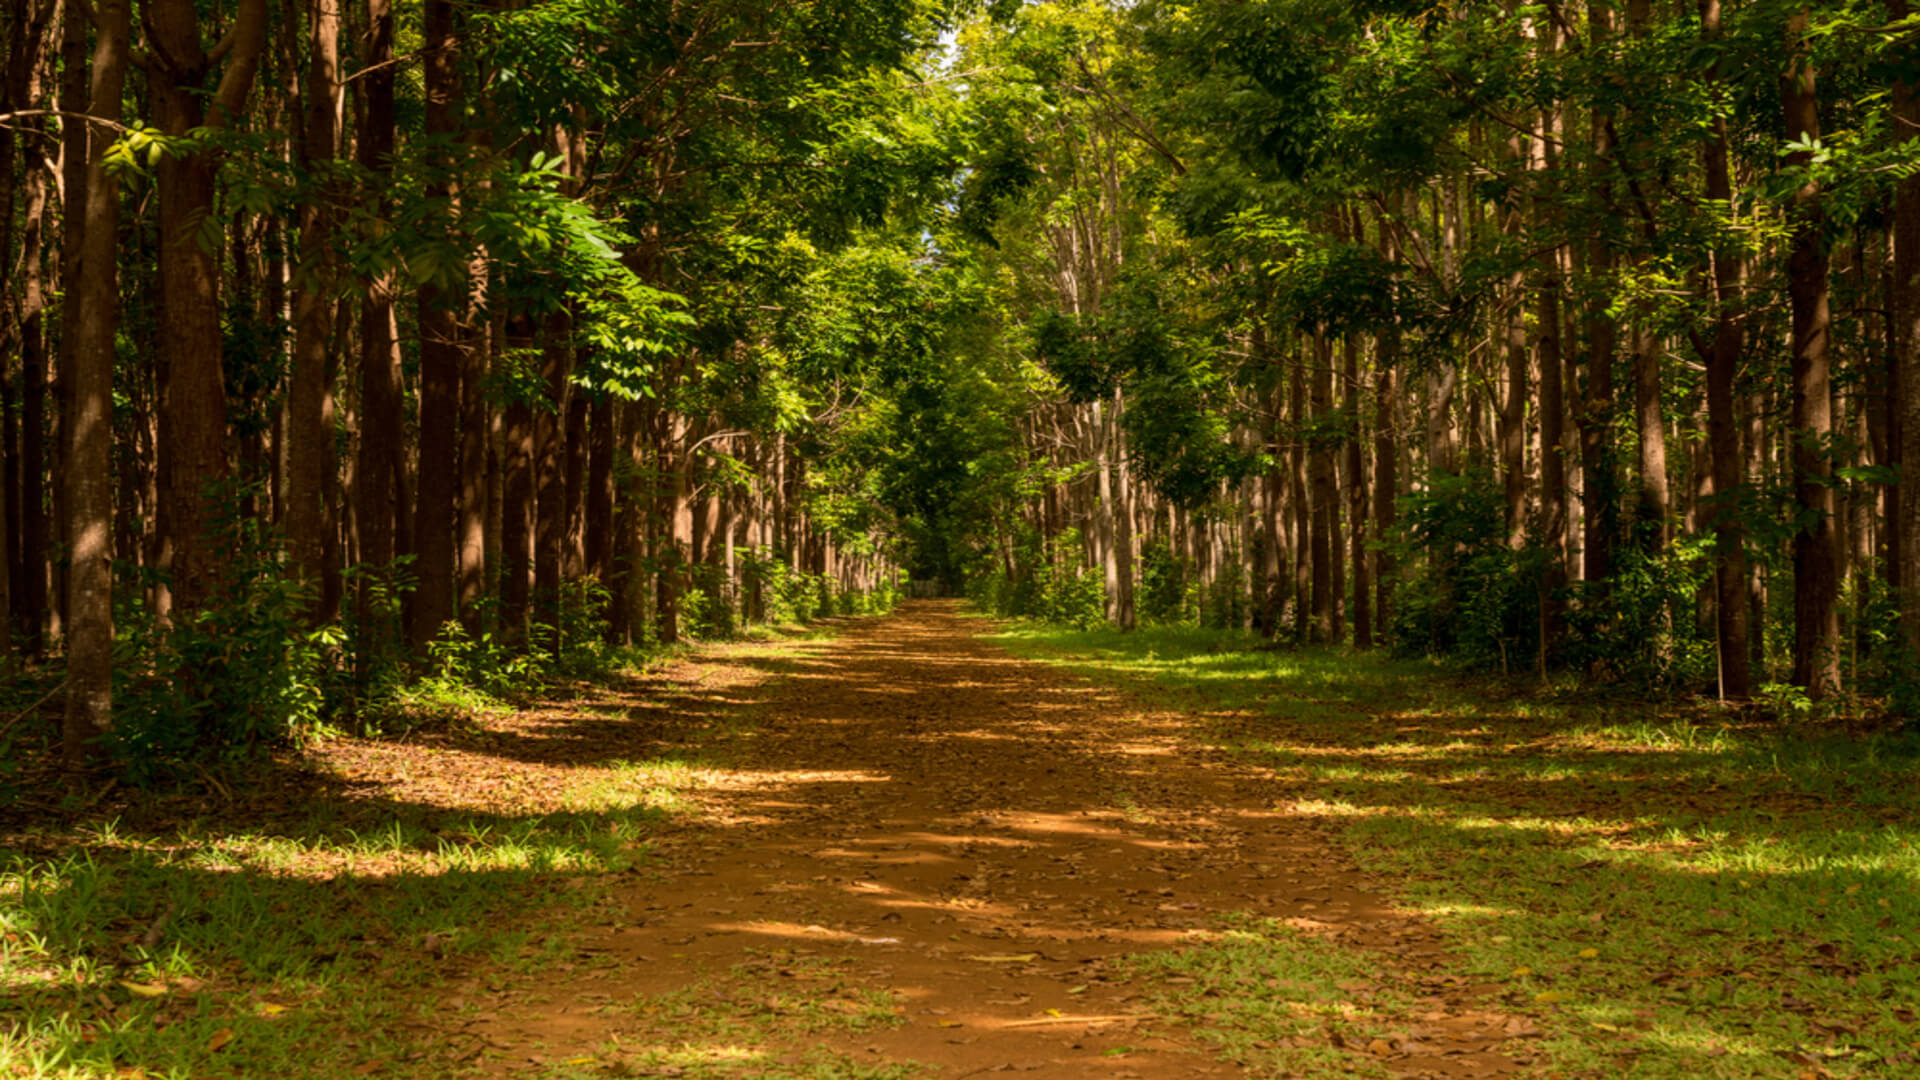 The path through the forest at Wai Koa Loop Trail